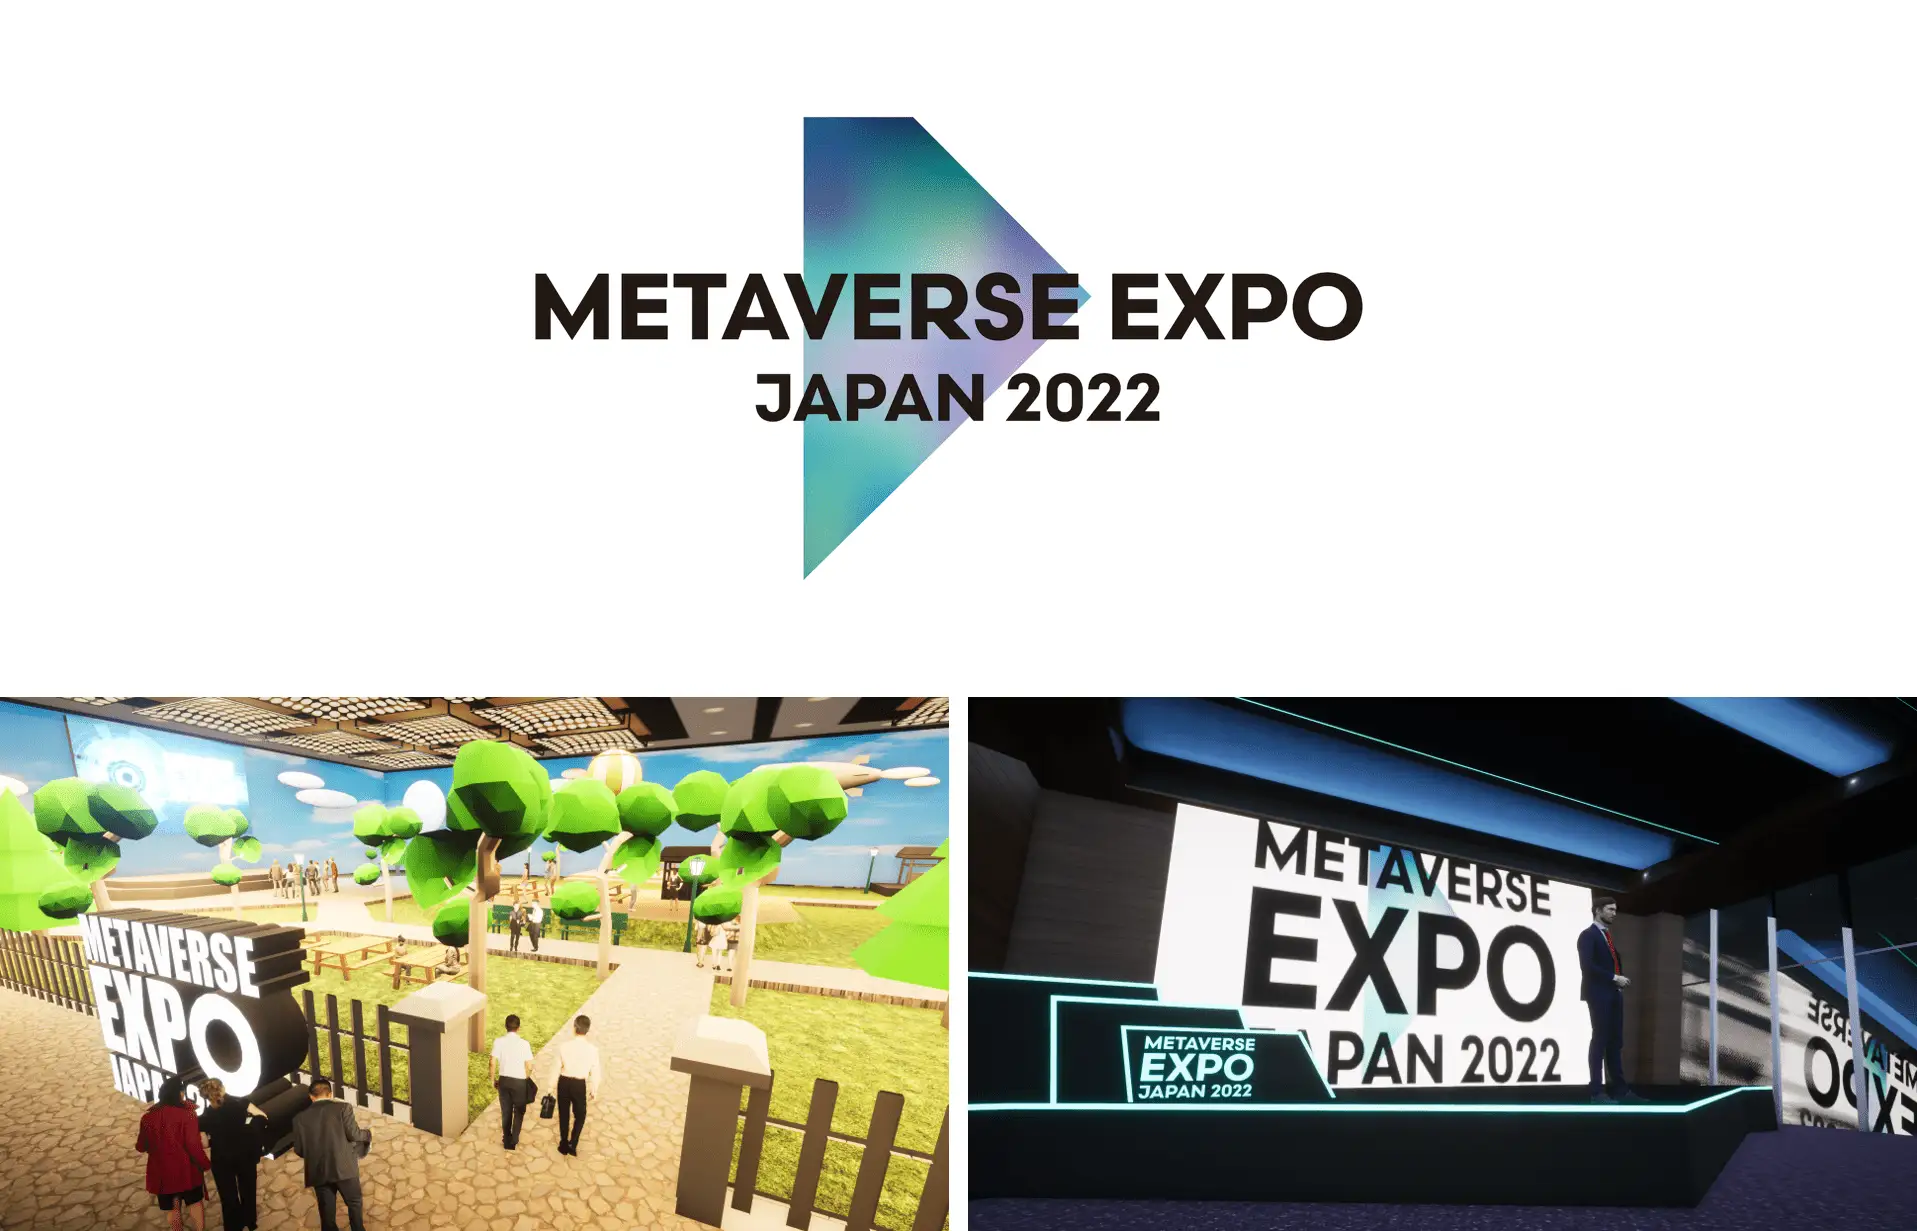 【METAVERSE EXPO JAPAN 2022】Meta社主催による「METAVERSE EXPO JAPAN 2022」7月27日・28日に開催。10月「CEATEC2022」内でも公開決定